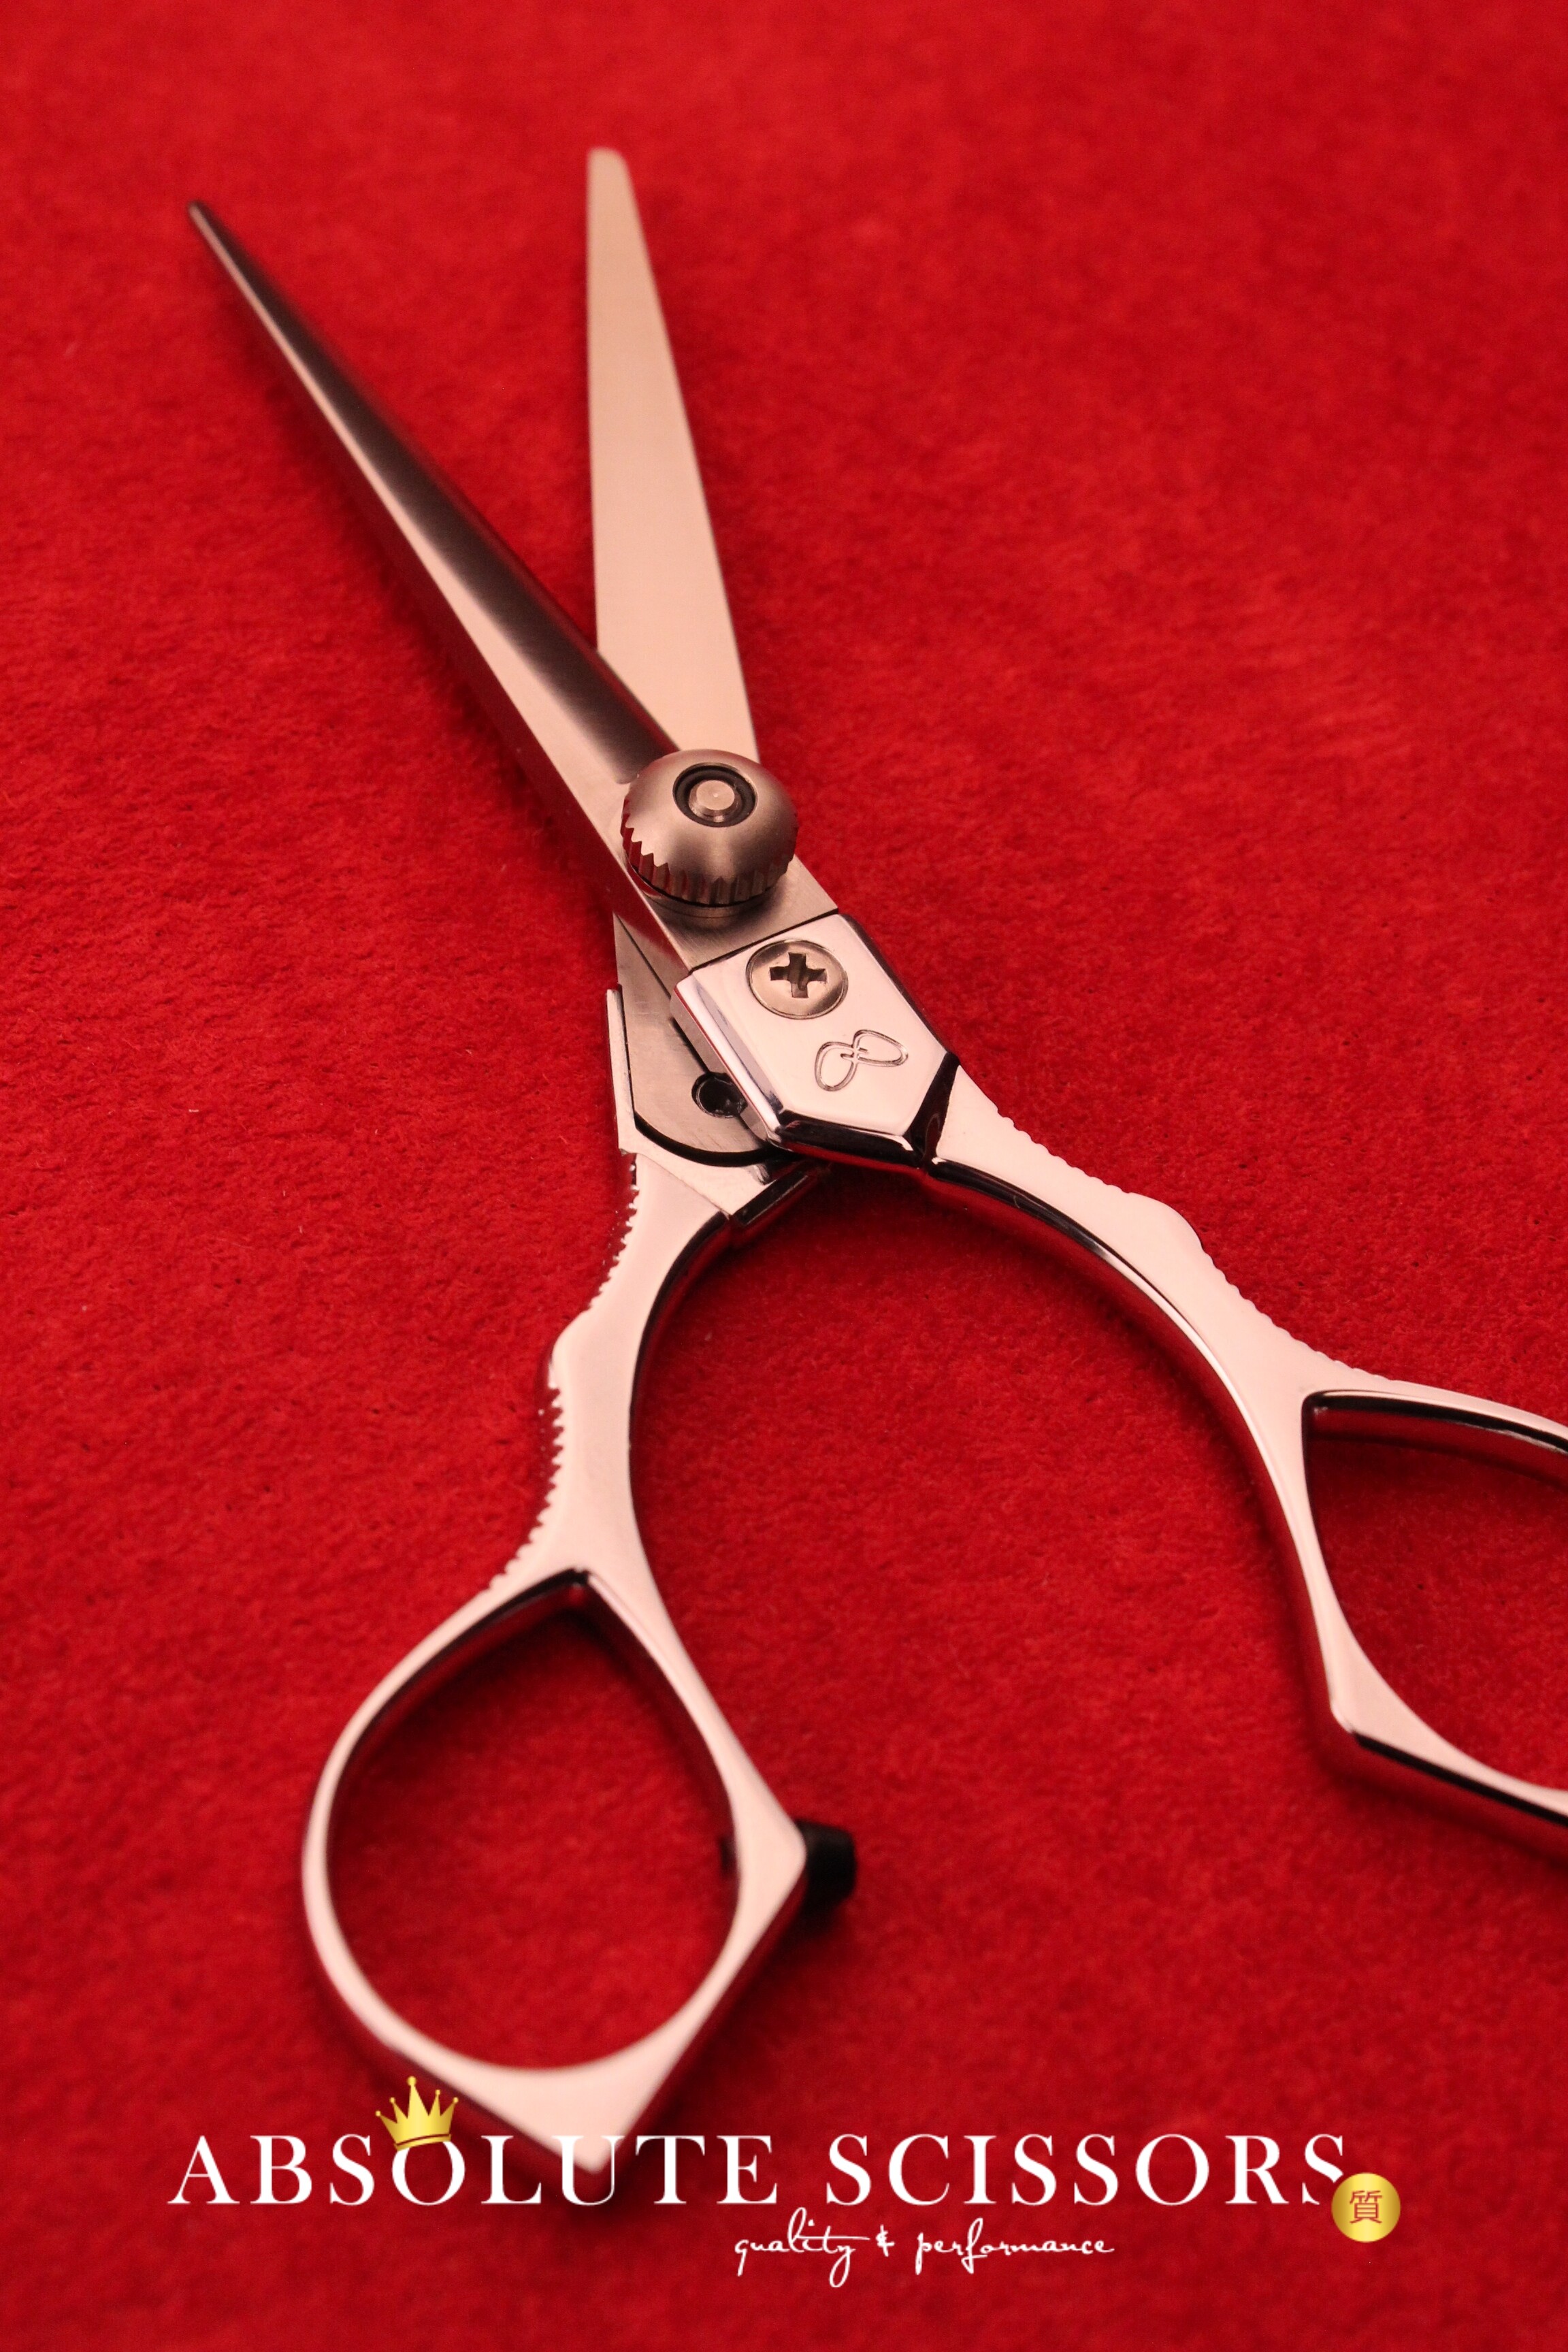 Yasaka scissors Shears M60 6 Inches – Japanese Hair Scissors - shears